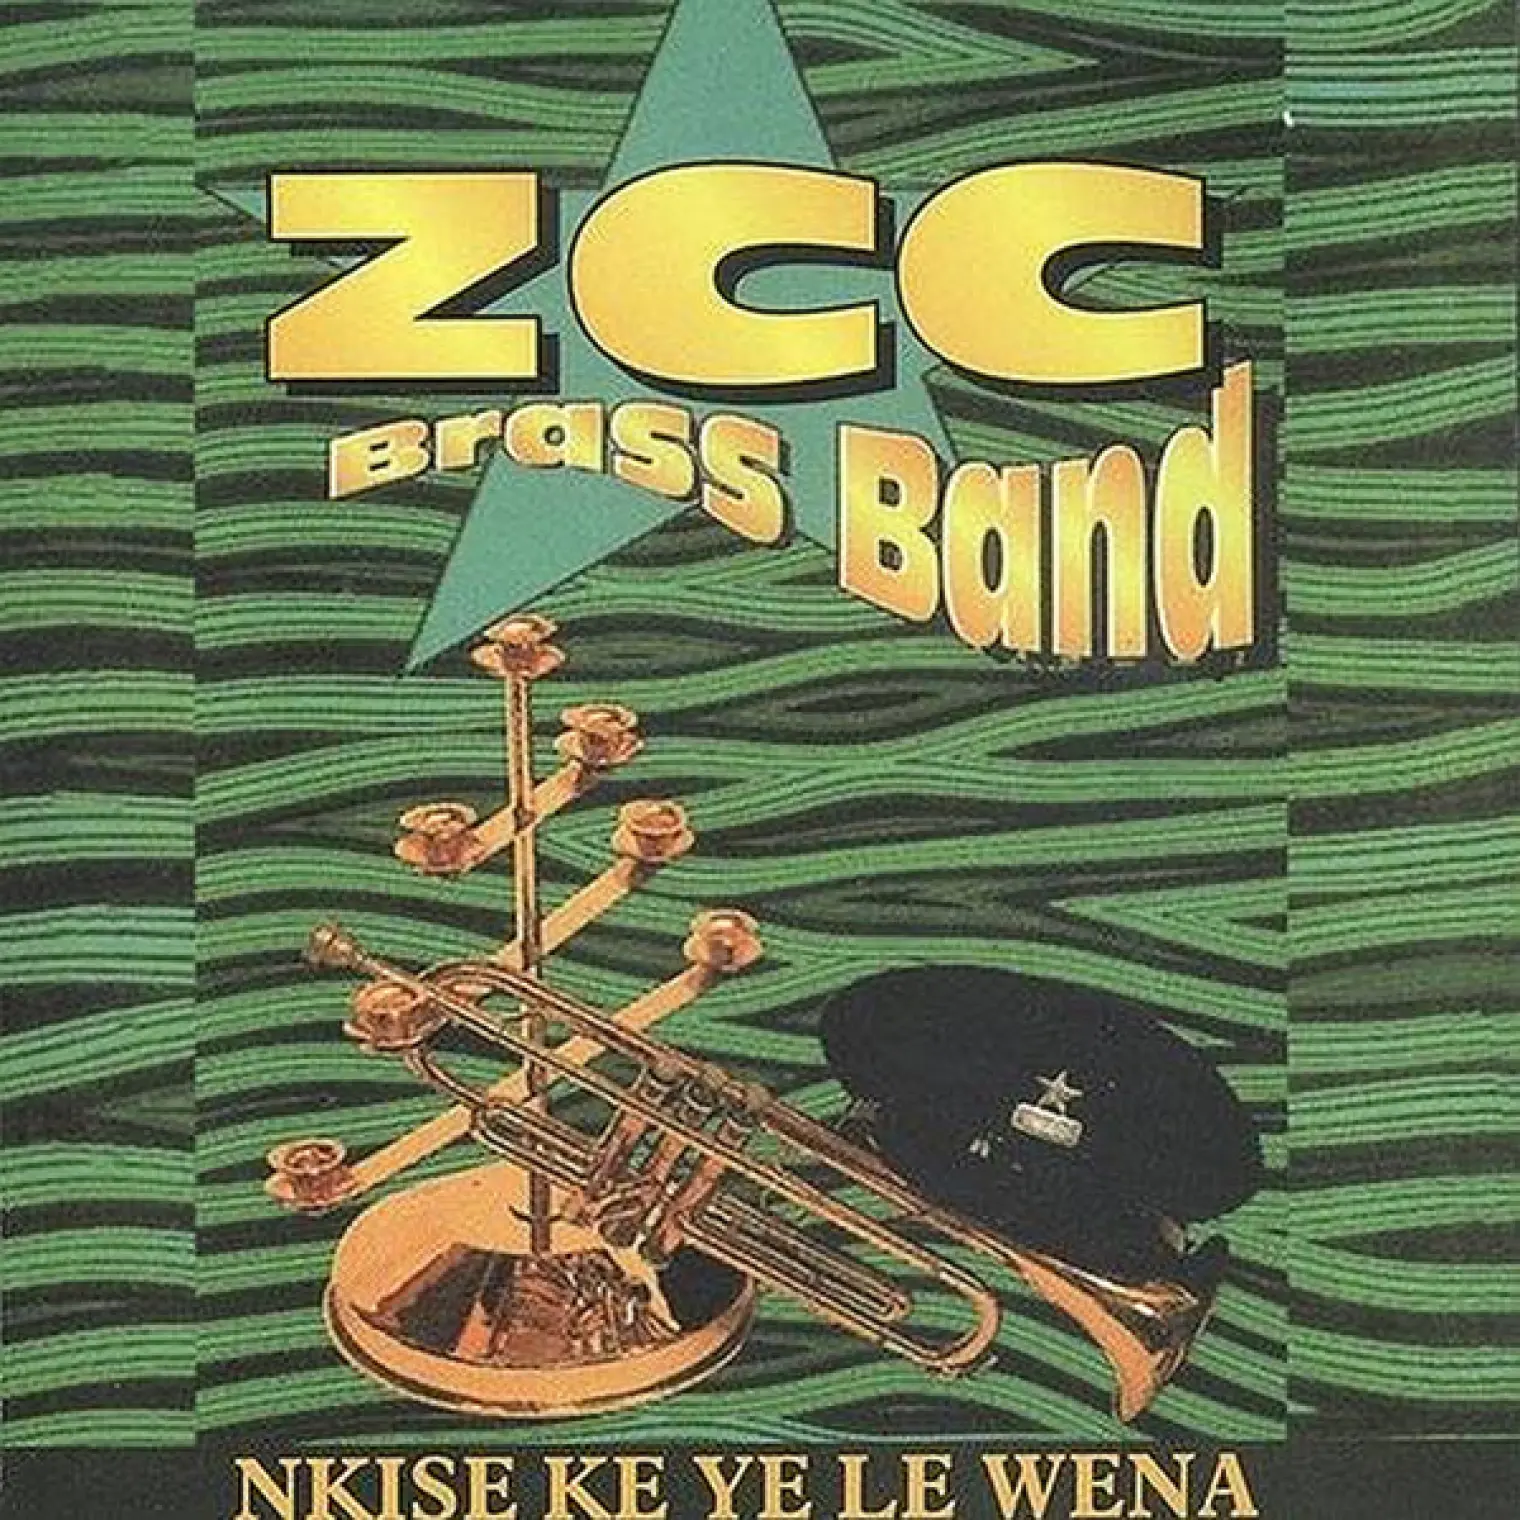 Nkise Ke Ye Le Wena -  Z.C.C. Brass Band 